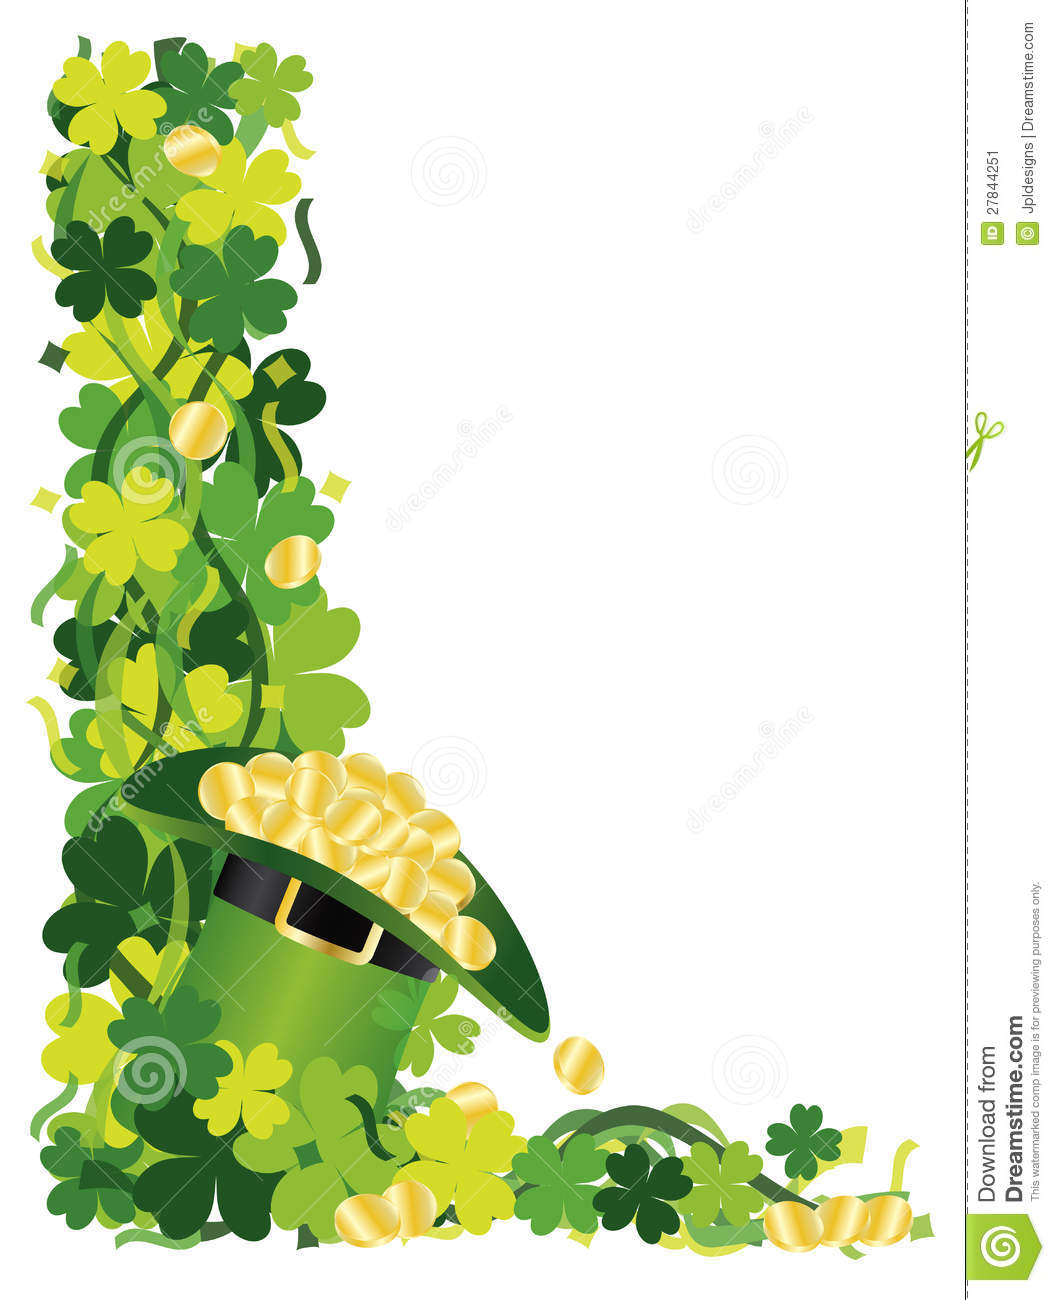 Four Leaf Clover Hat Of Gold Border Illustration Stock Image   Image